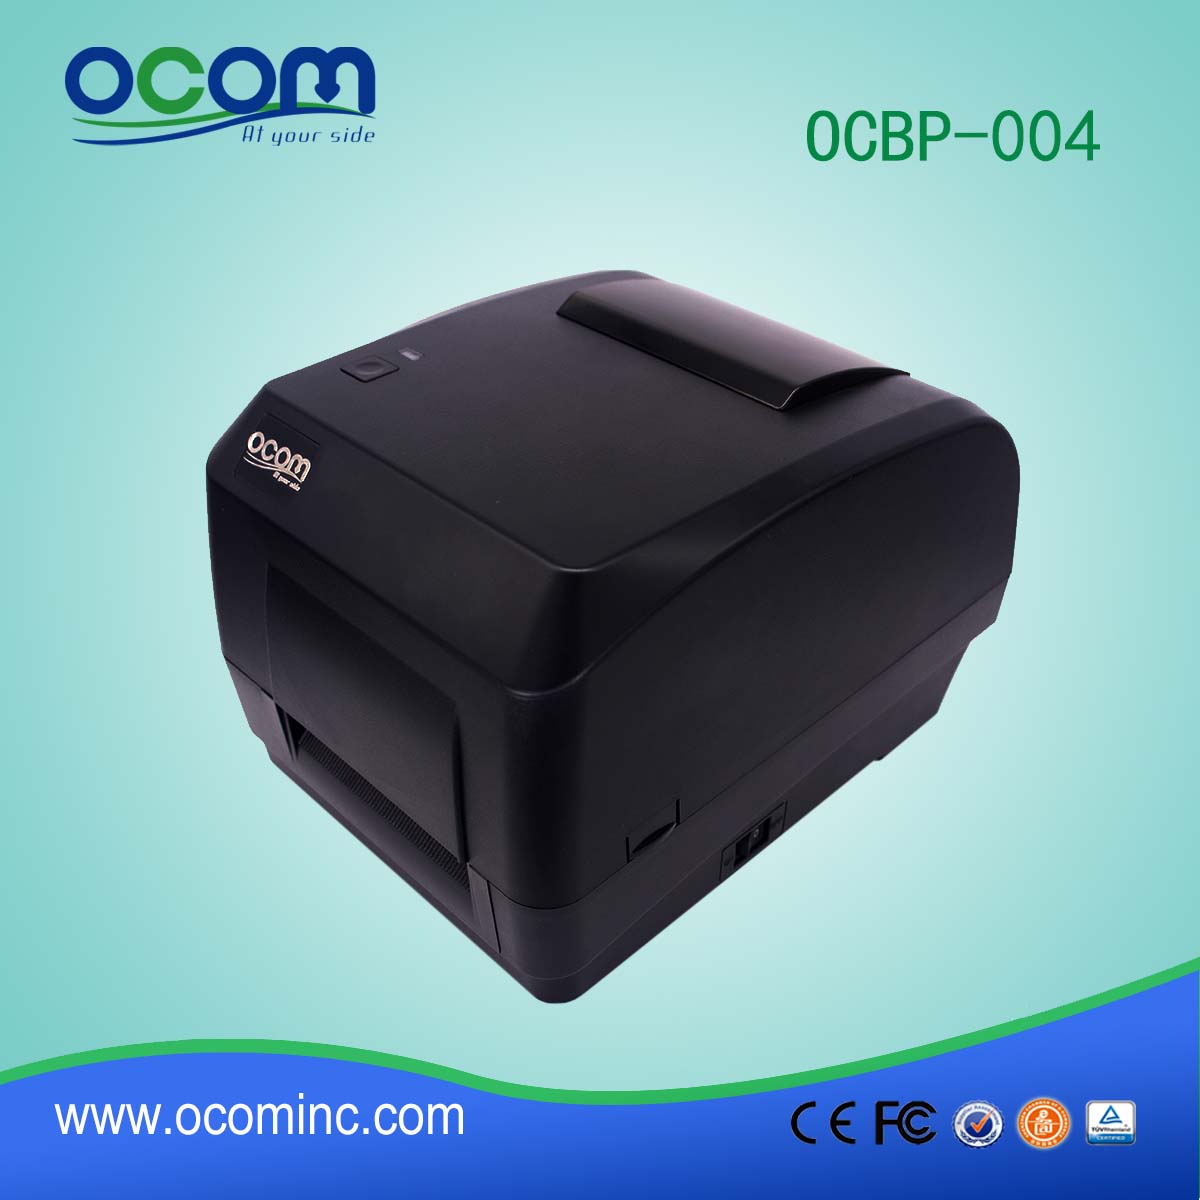 New Model OCBP-004A-U Thermal Transfer Bar Code Label Printer